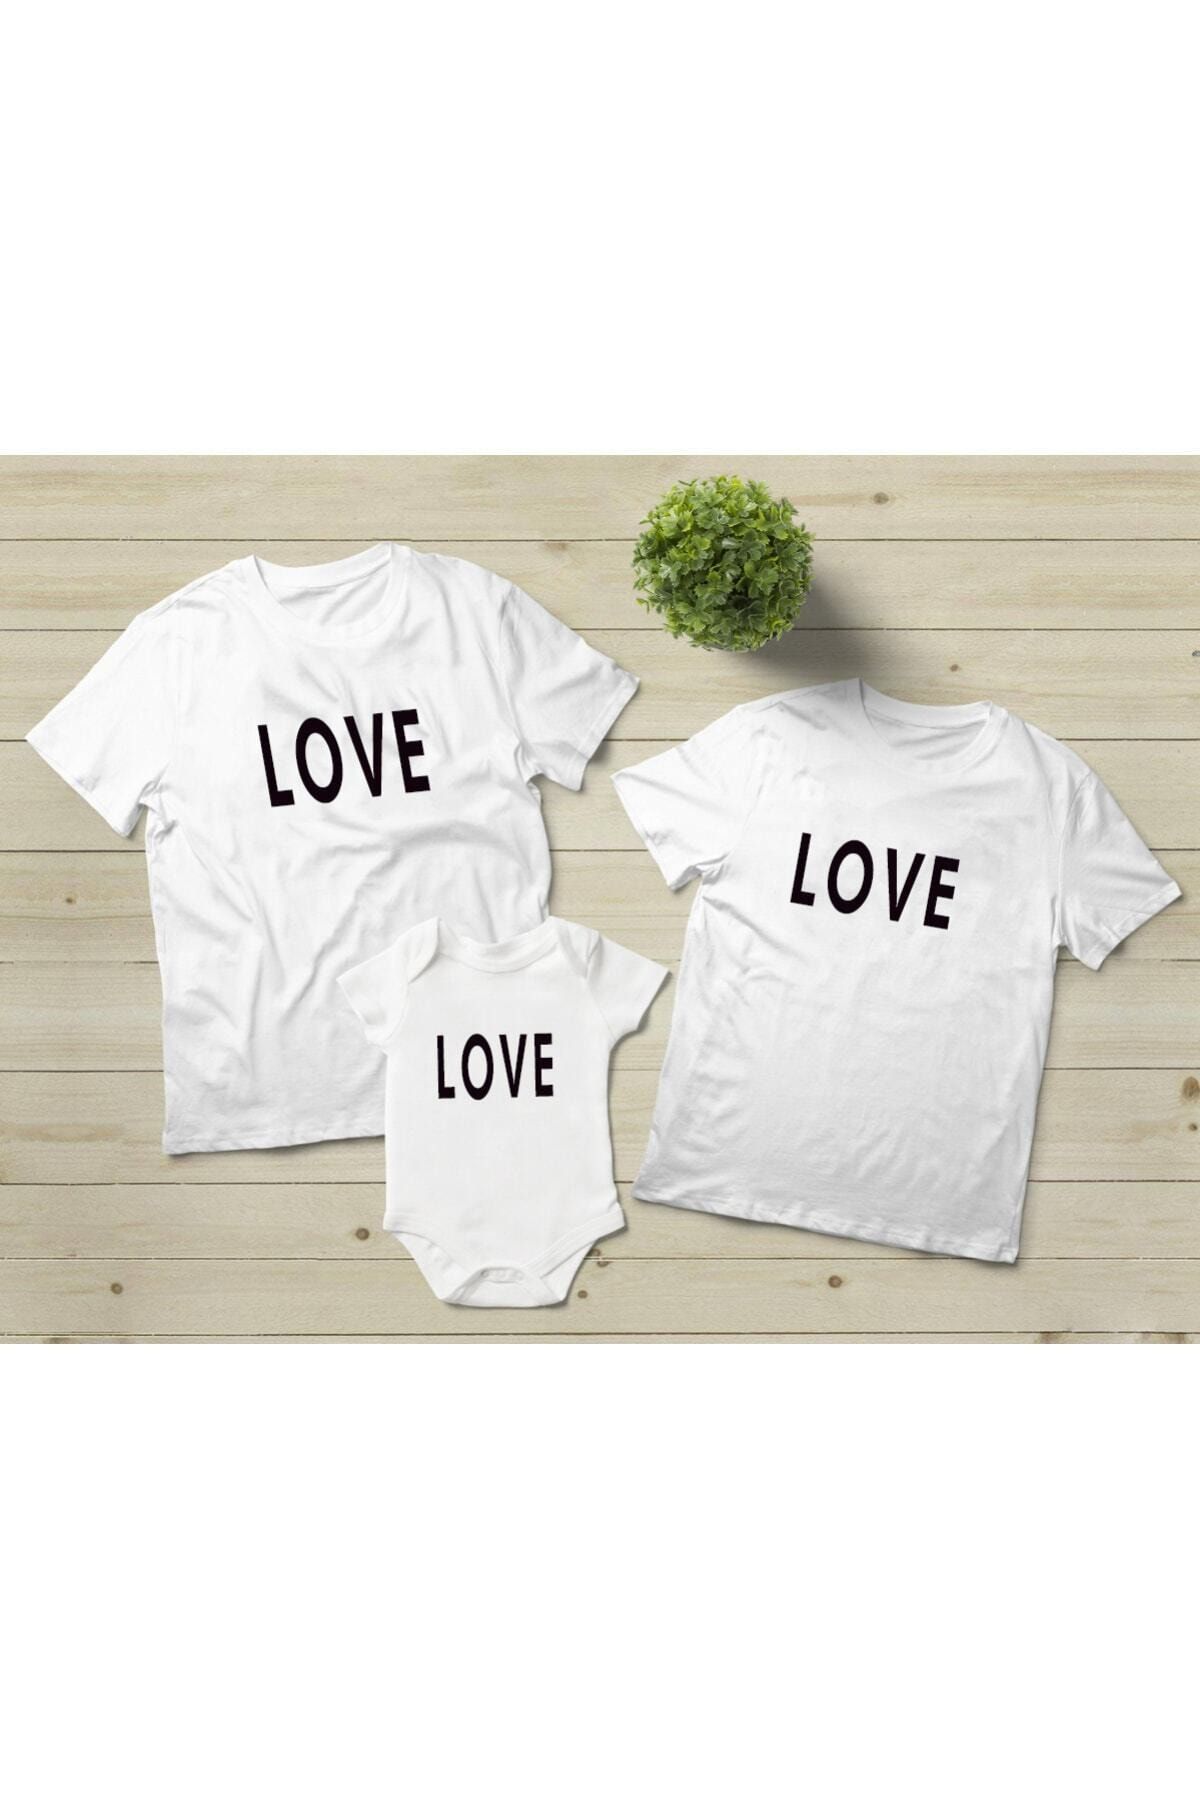 Genel Markalar Love Baskılı 3lü Aile Kombini 2 Tshirt 1 Bebek Zıbın -beden Yazmayı Unutmayınız